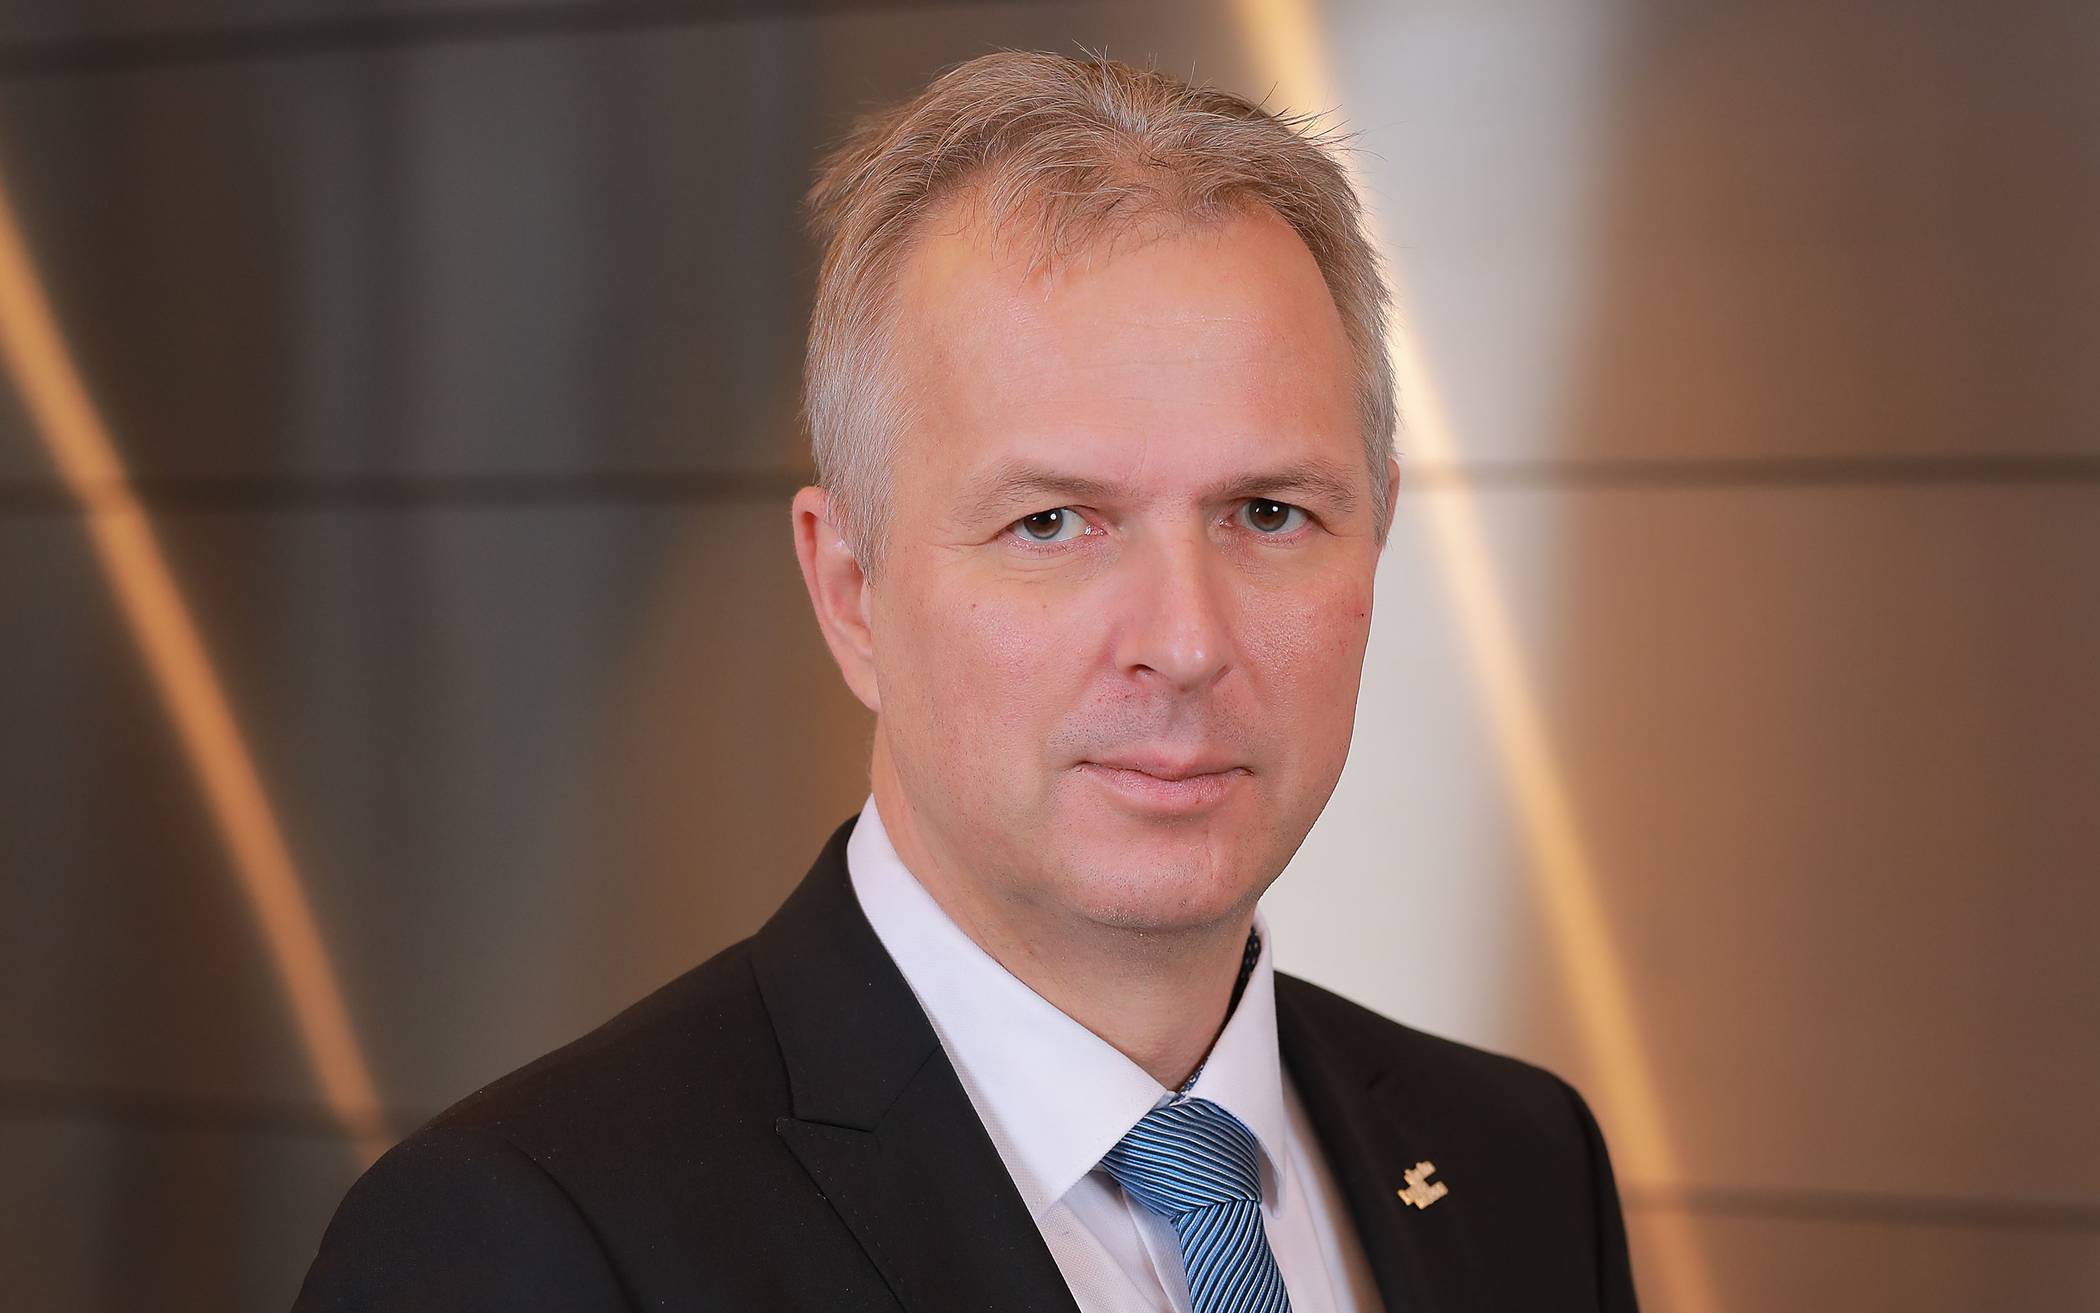  Kreisdirektor und Krisenstabsleiter Dirk Brügge bemängelt die anhaltenden SORMAS-Störunge.  